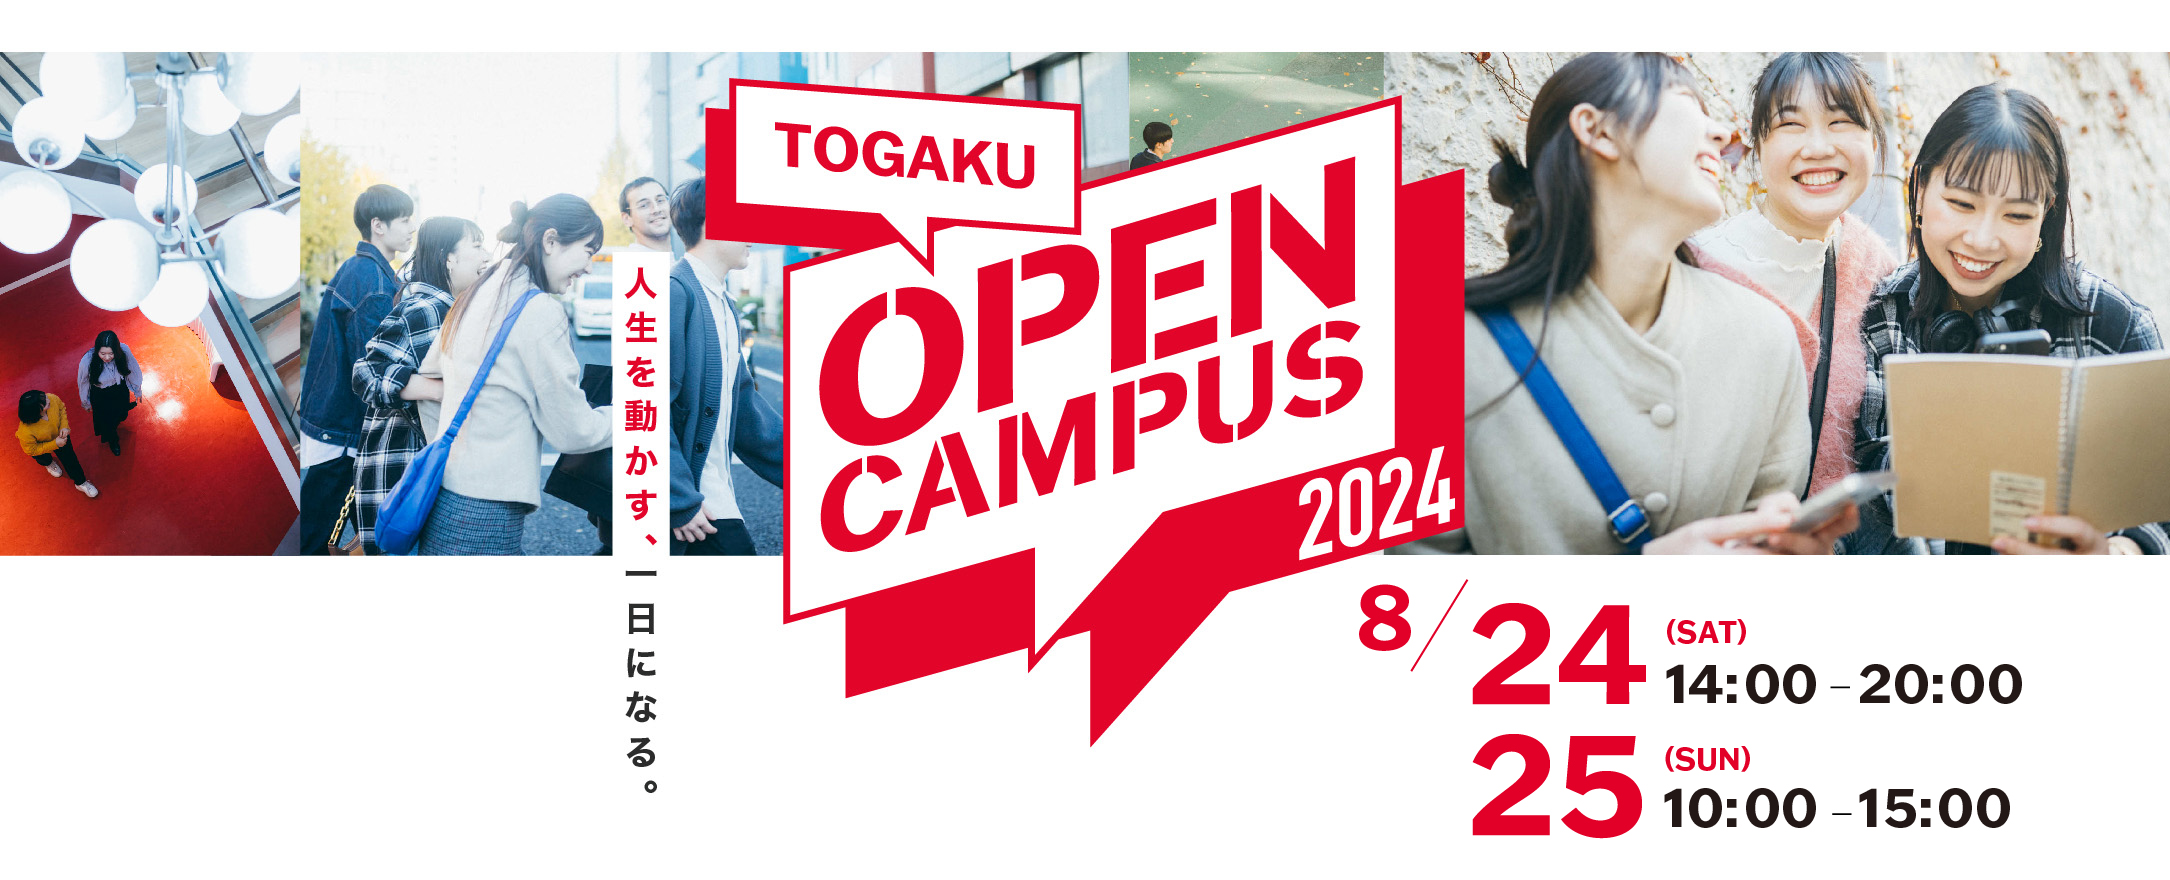 TOGAKU OPEN CAMPUS 2024 8/24 (SAT) 14:00-20:00, 8/25 (SUN) 10:00-15:00